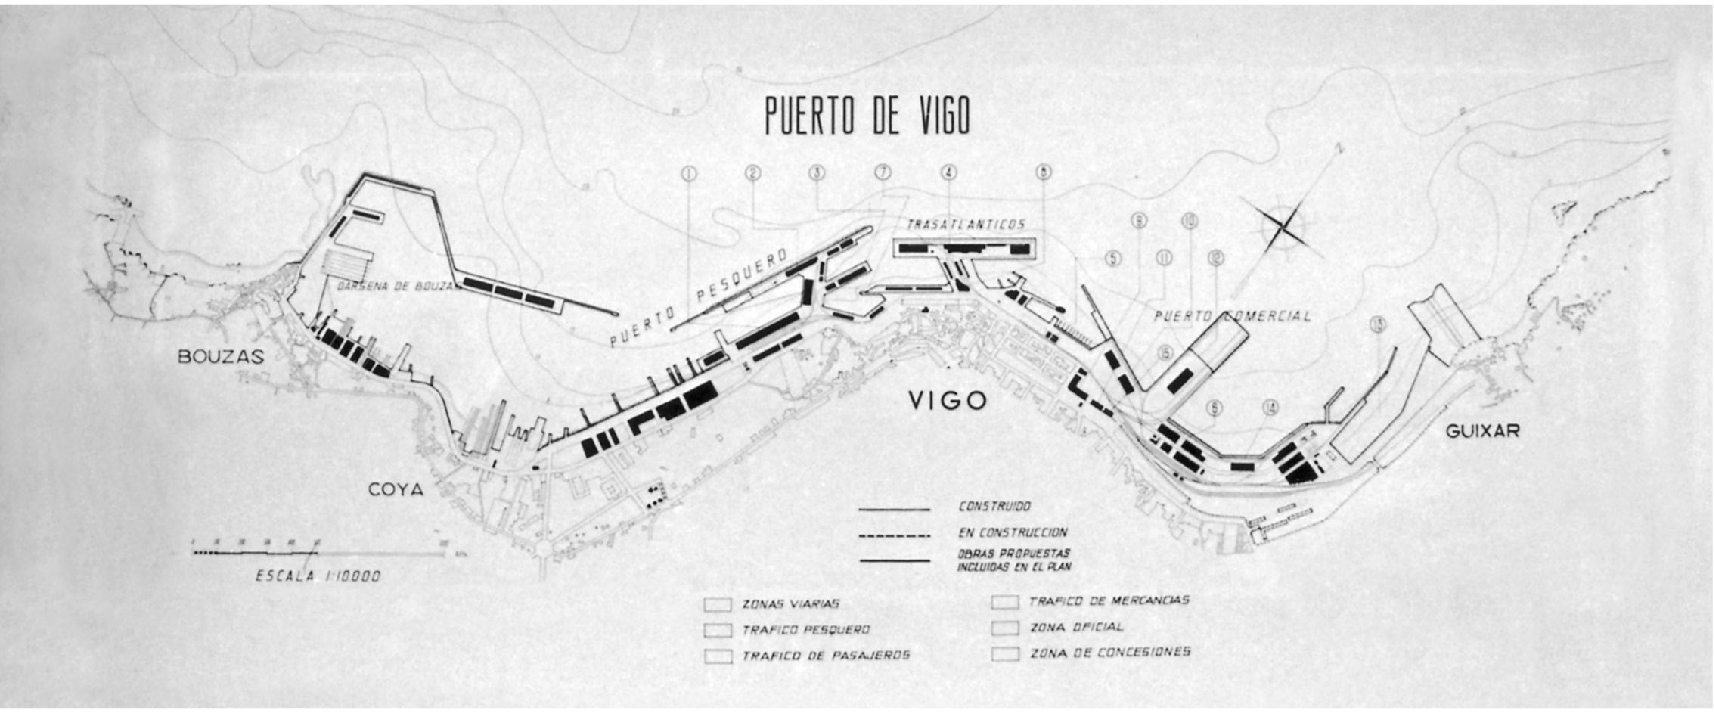 Una pequeña historia del Puerto de Vigo